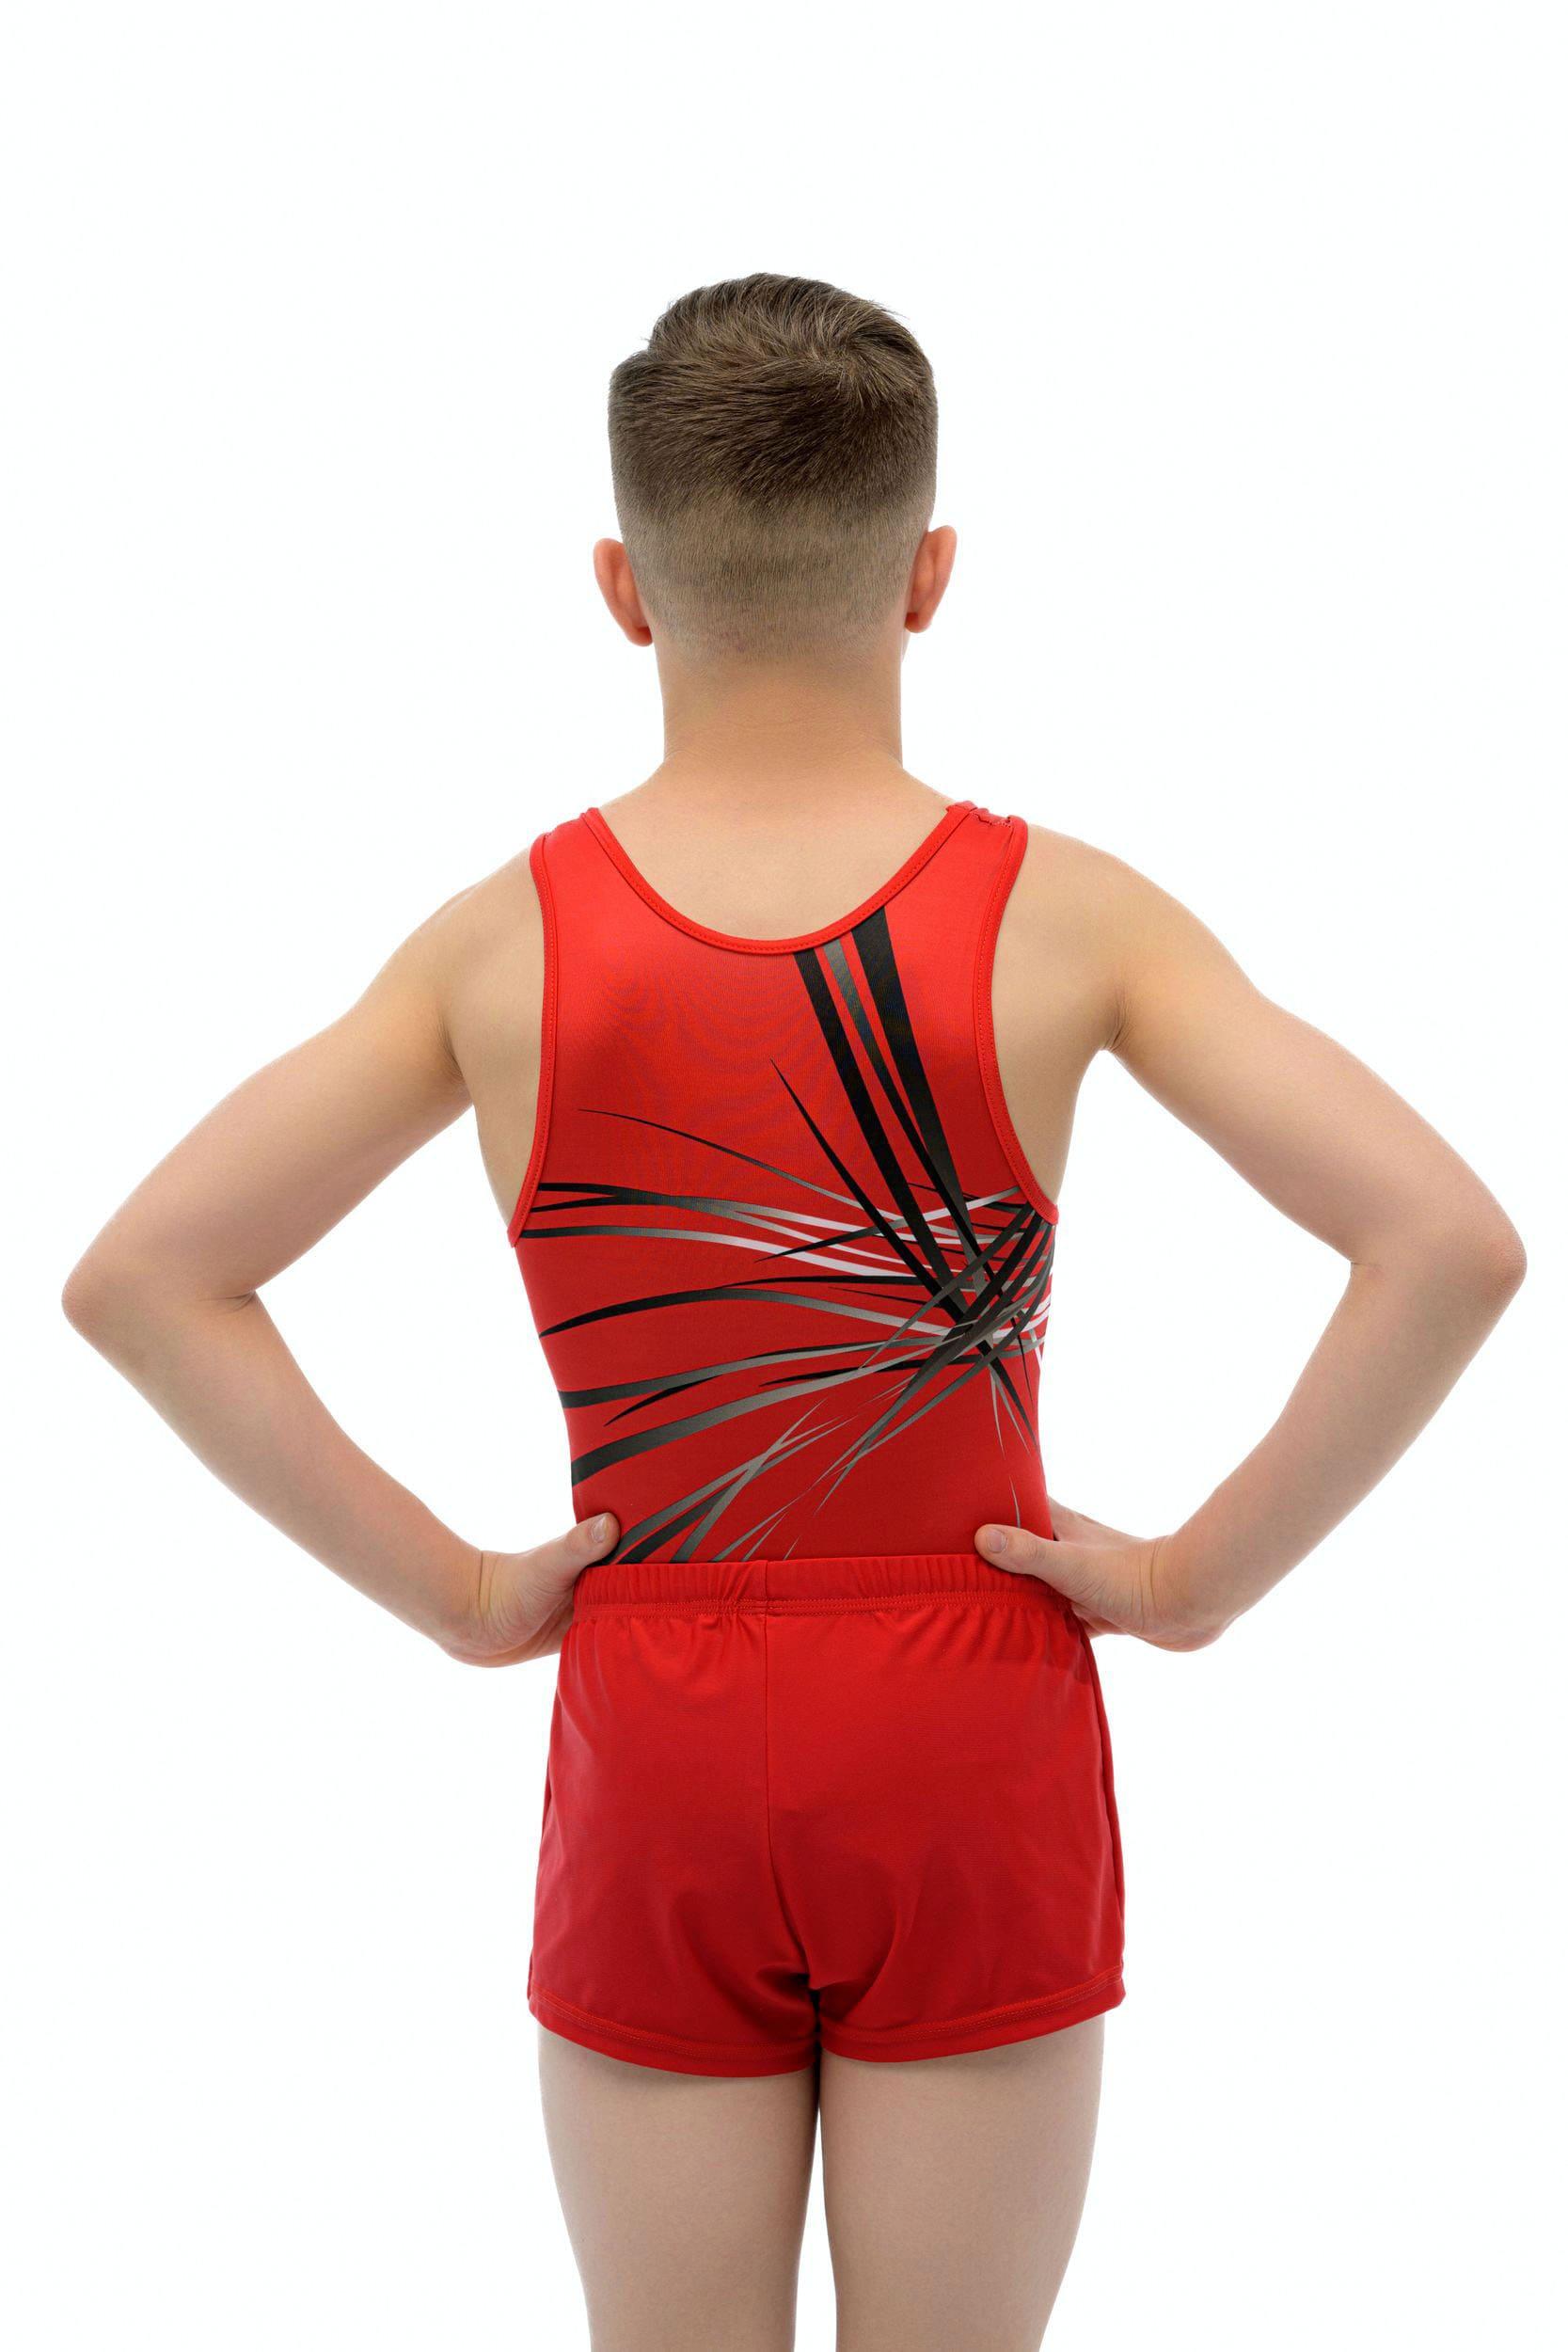 Купальник мужской для спортивной гимнастики Christian Moreau Acier 4990 красный с черными полосками без рукава